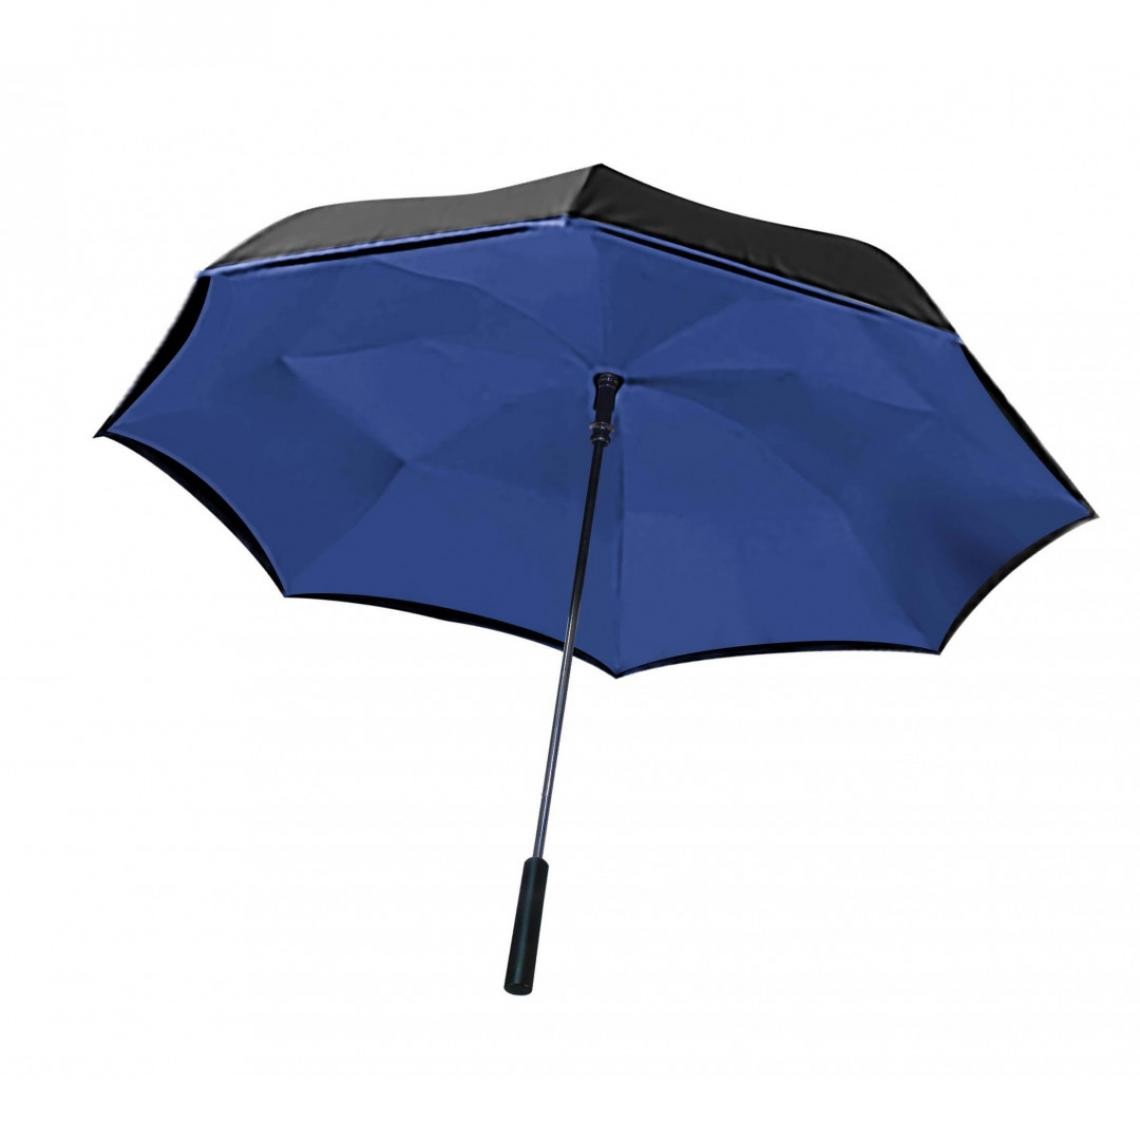 Venteo - Magique Umbrella Interieur Bleu - Parapluie magique avec ouverture inversée - Résiste au vent - Couleur BLEU - Matériel de pose, produits d'entretien